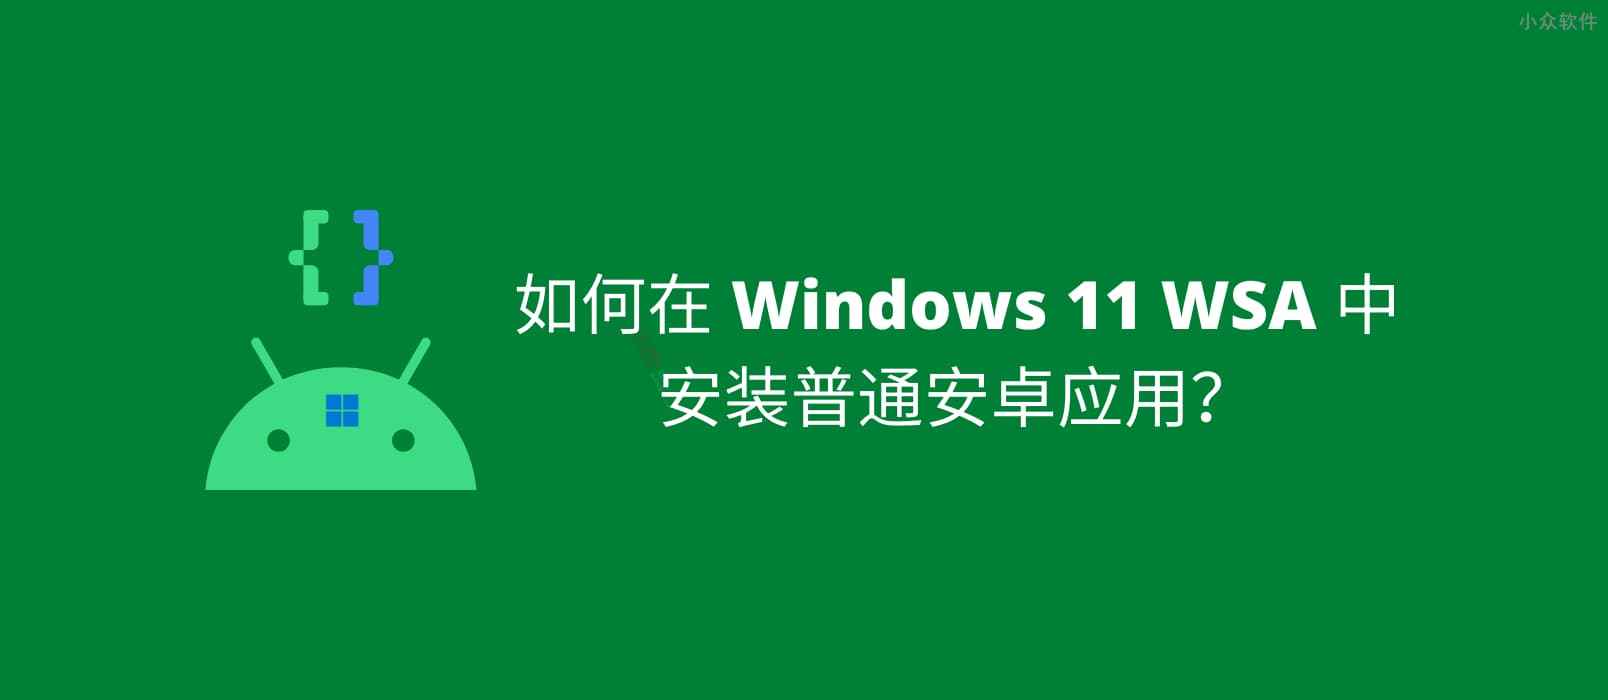 如何在 Windows 11 WSA 中安装安卓应用？